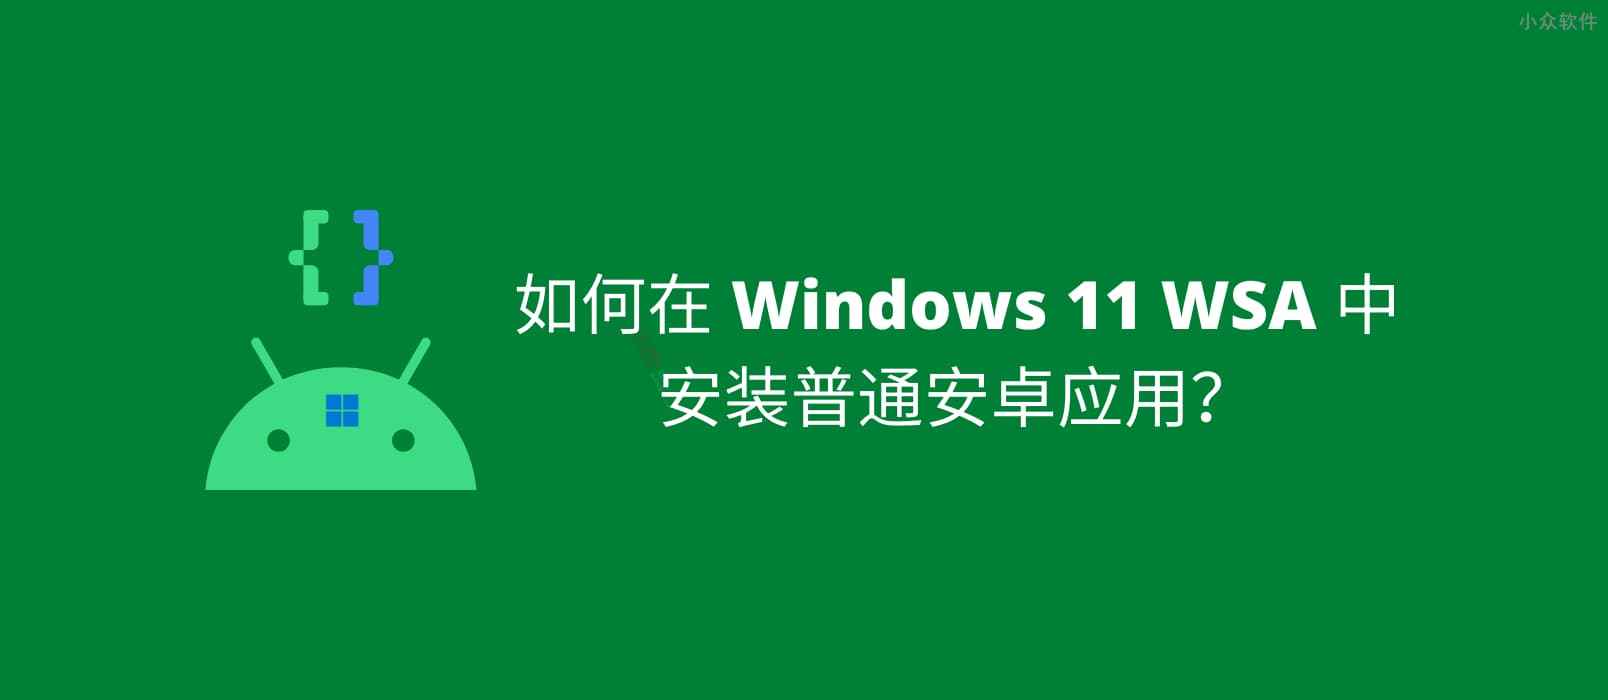 如何在 Windows 11 WSA 中安装安卓应用？